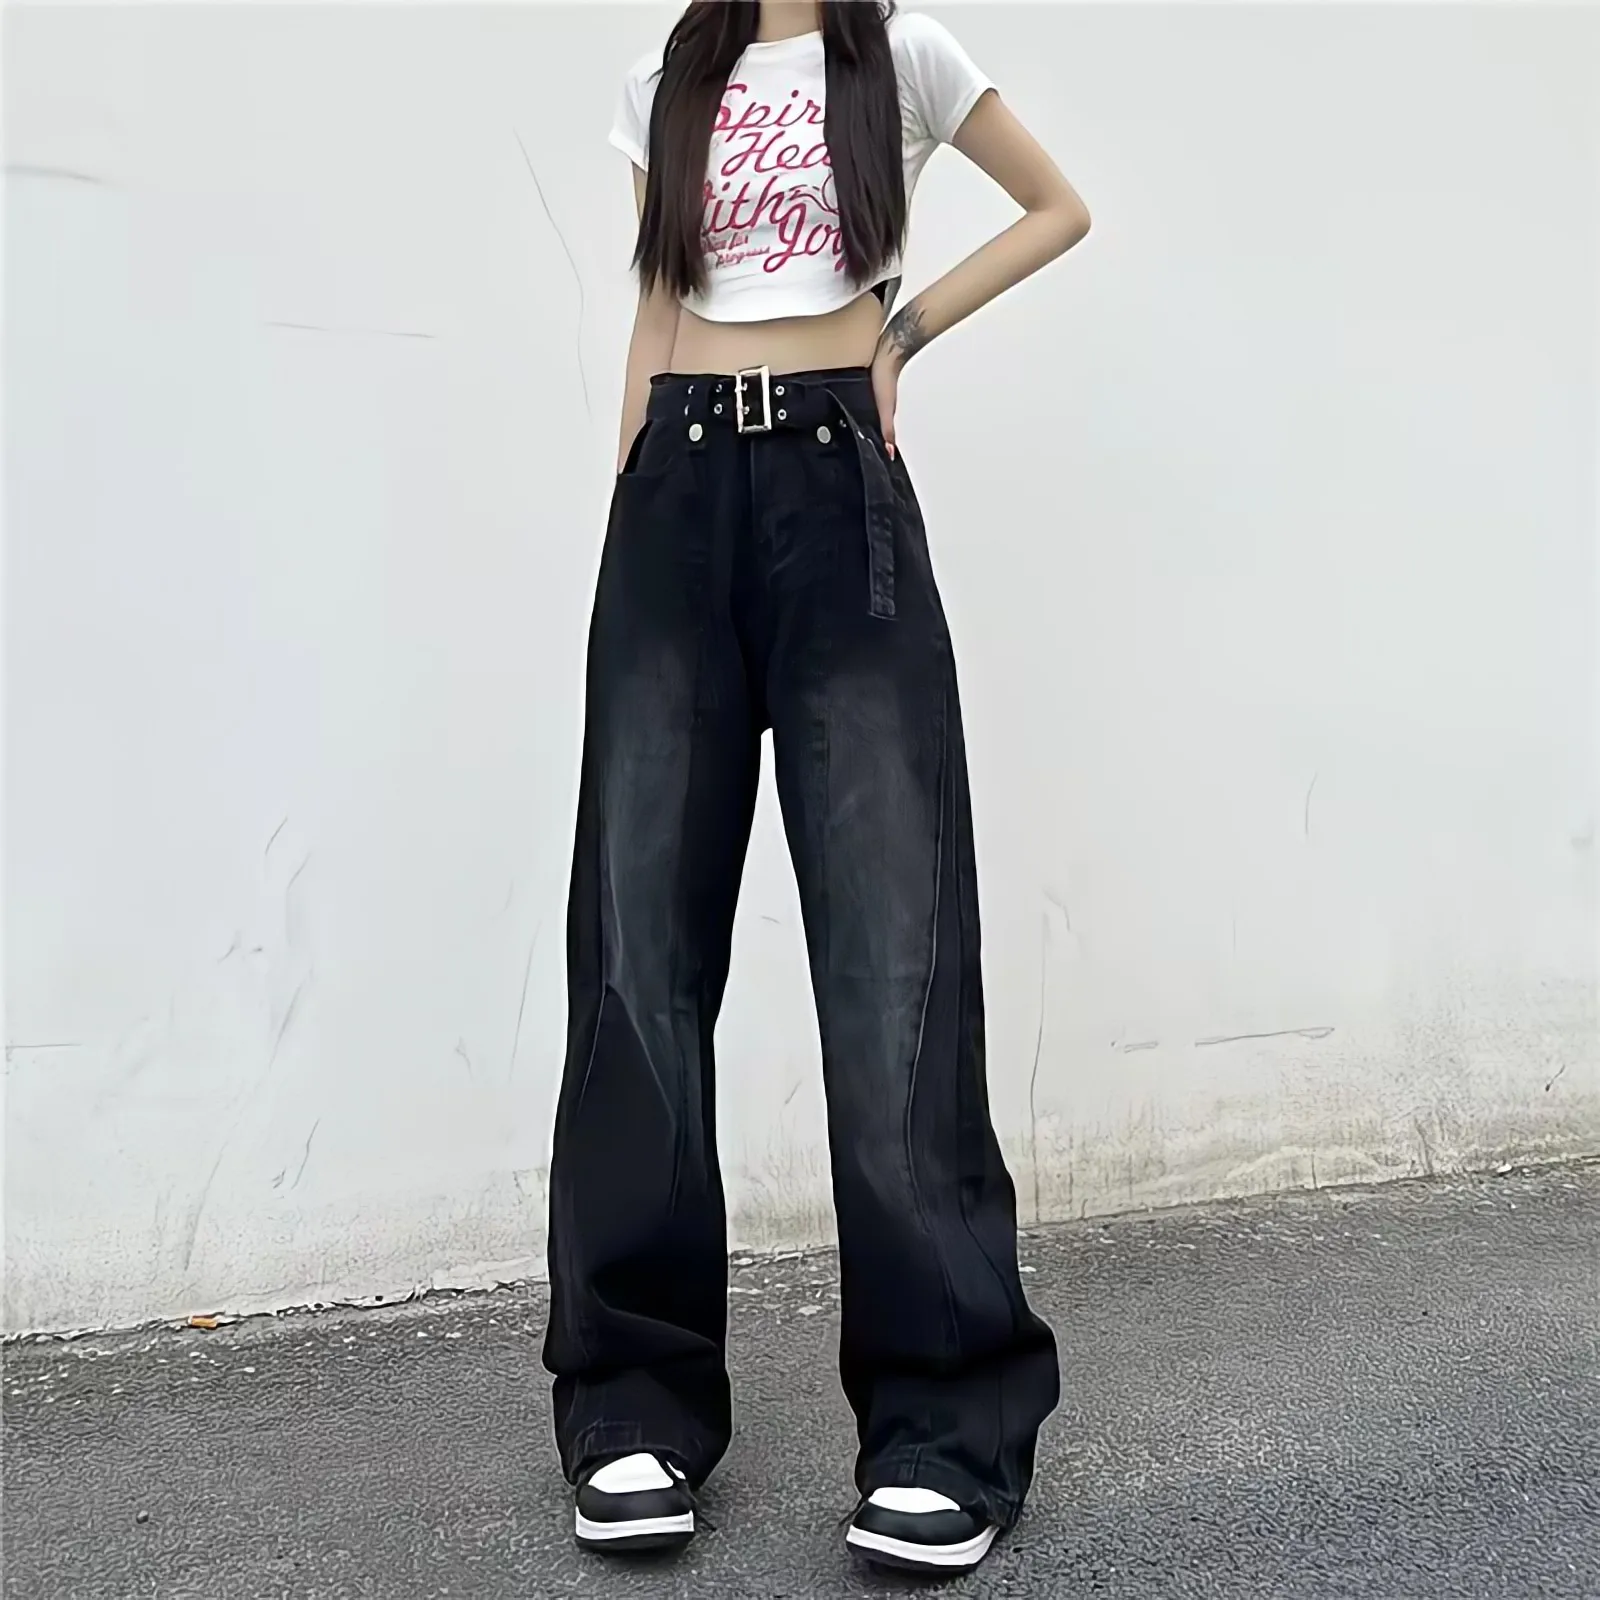 

Черные женские джинсы с высокой талией в стиле панк, мешковатые брюки, прямые широкие брюки, уличная одежда Y2k, модные трендовые брюки в Коре...